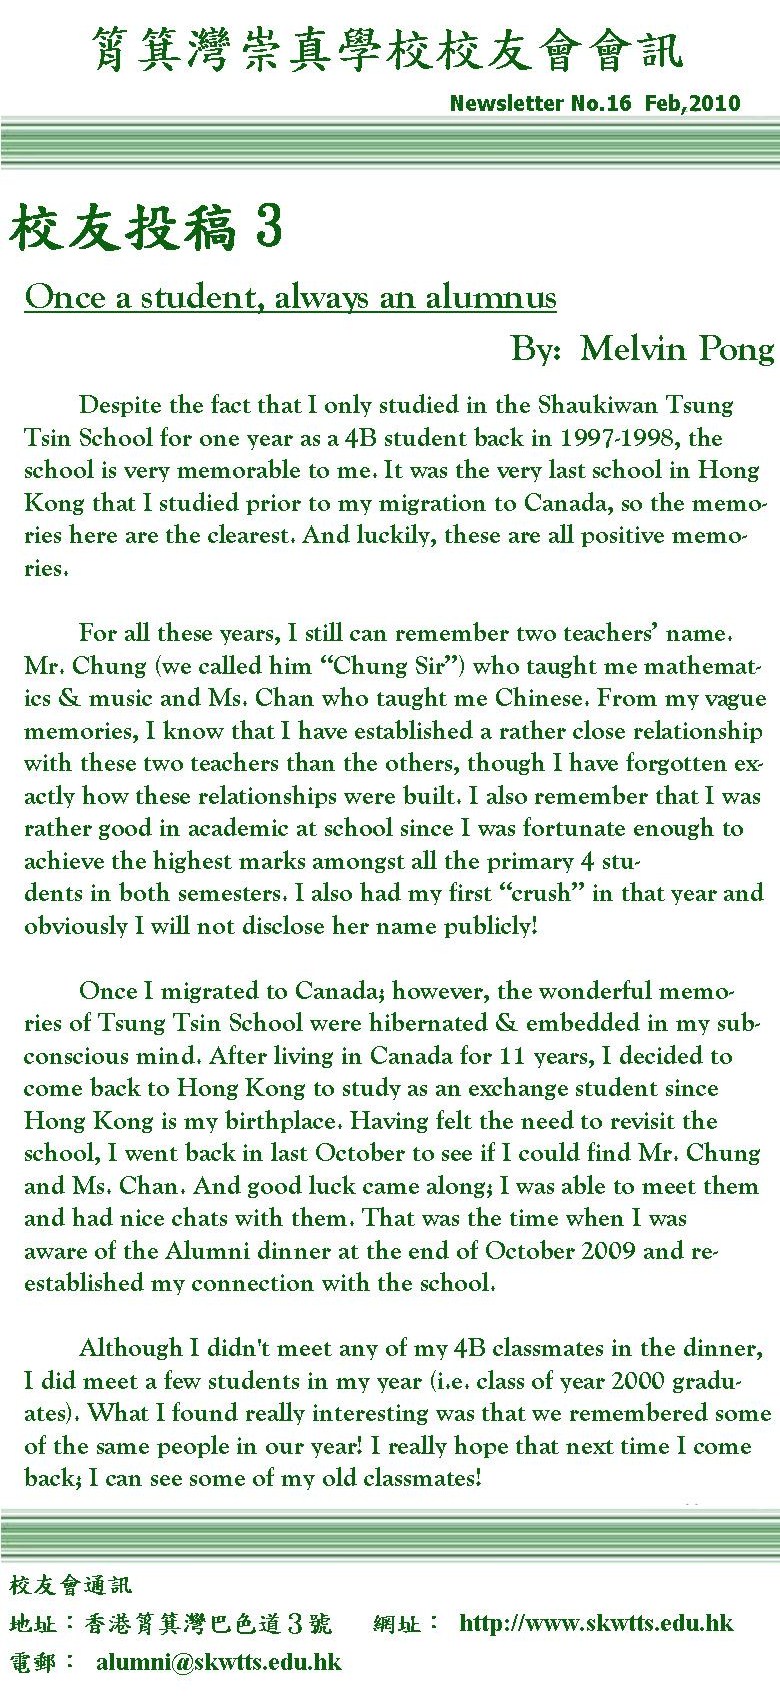 校友投稿: Once a student, always an alumnus　－Melvin Pong